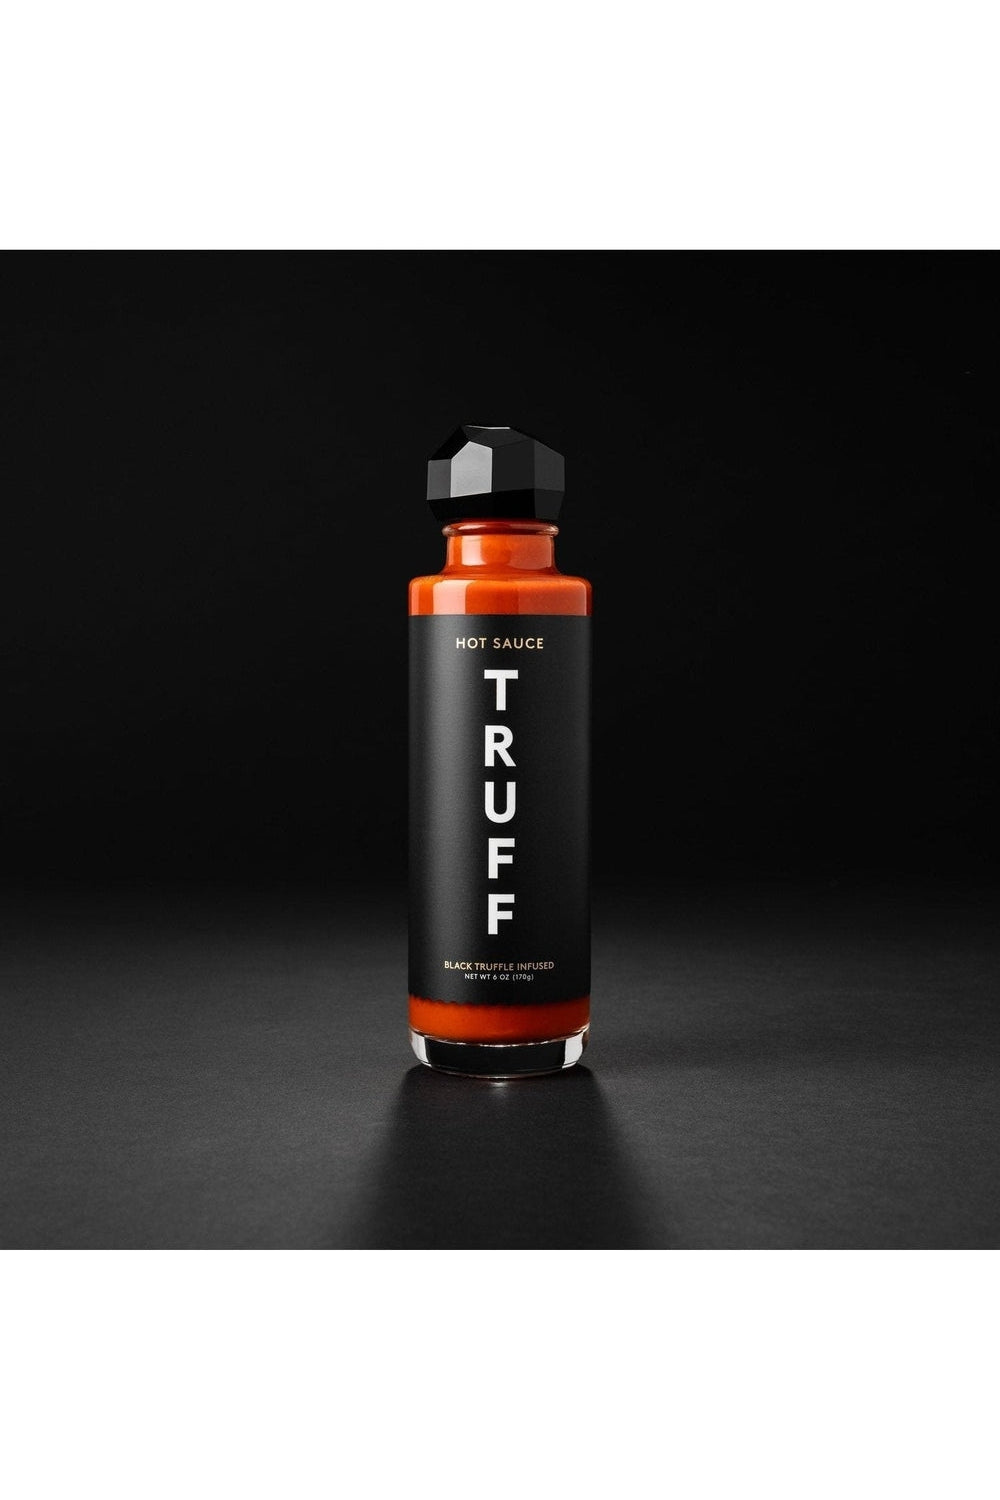 Bottle of Truff Hot Sauce